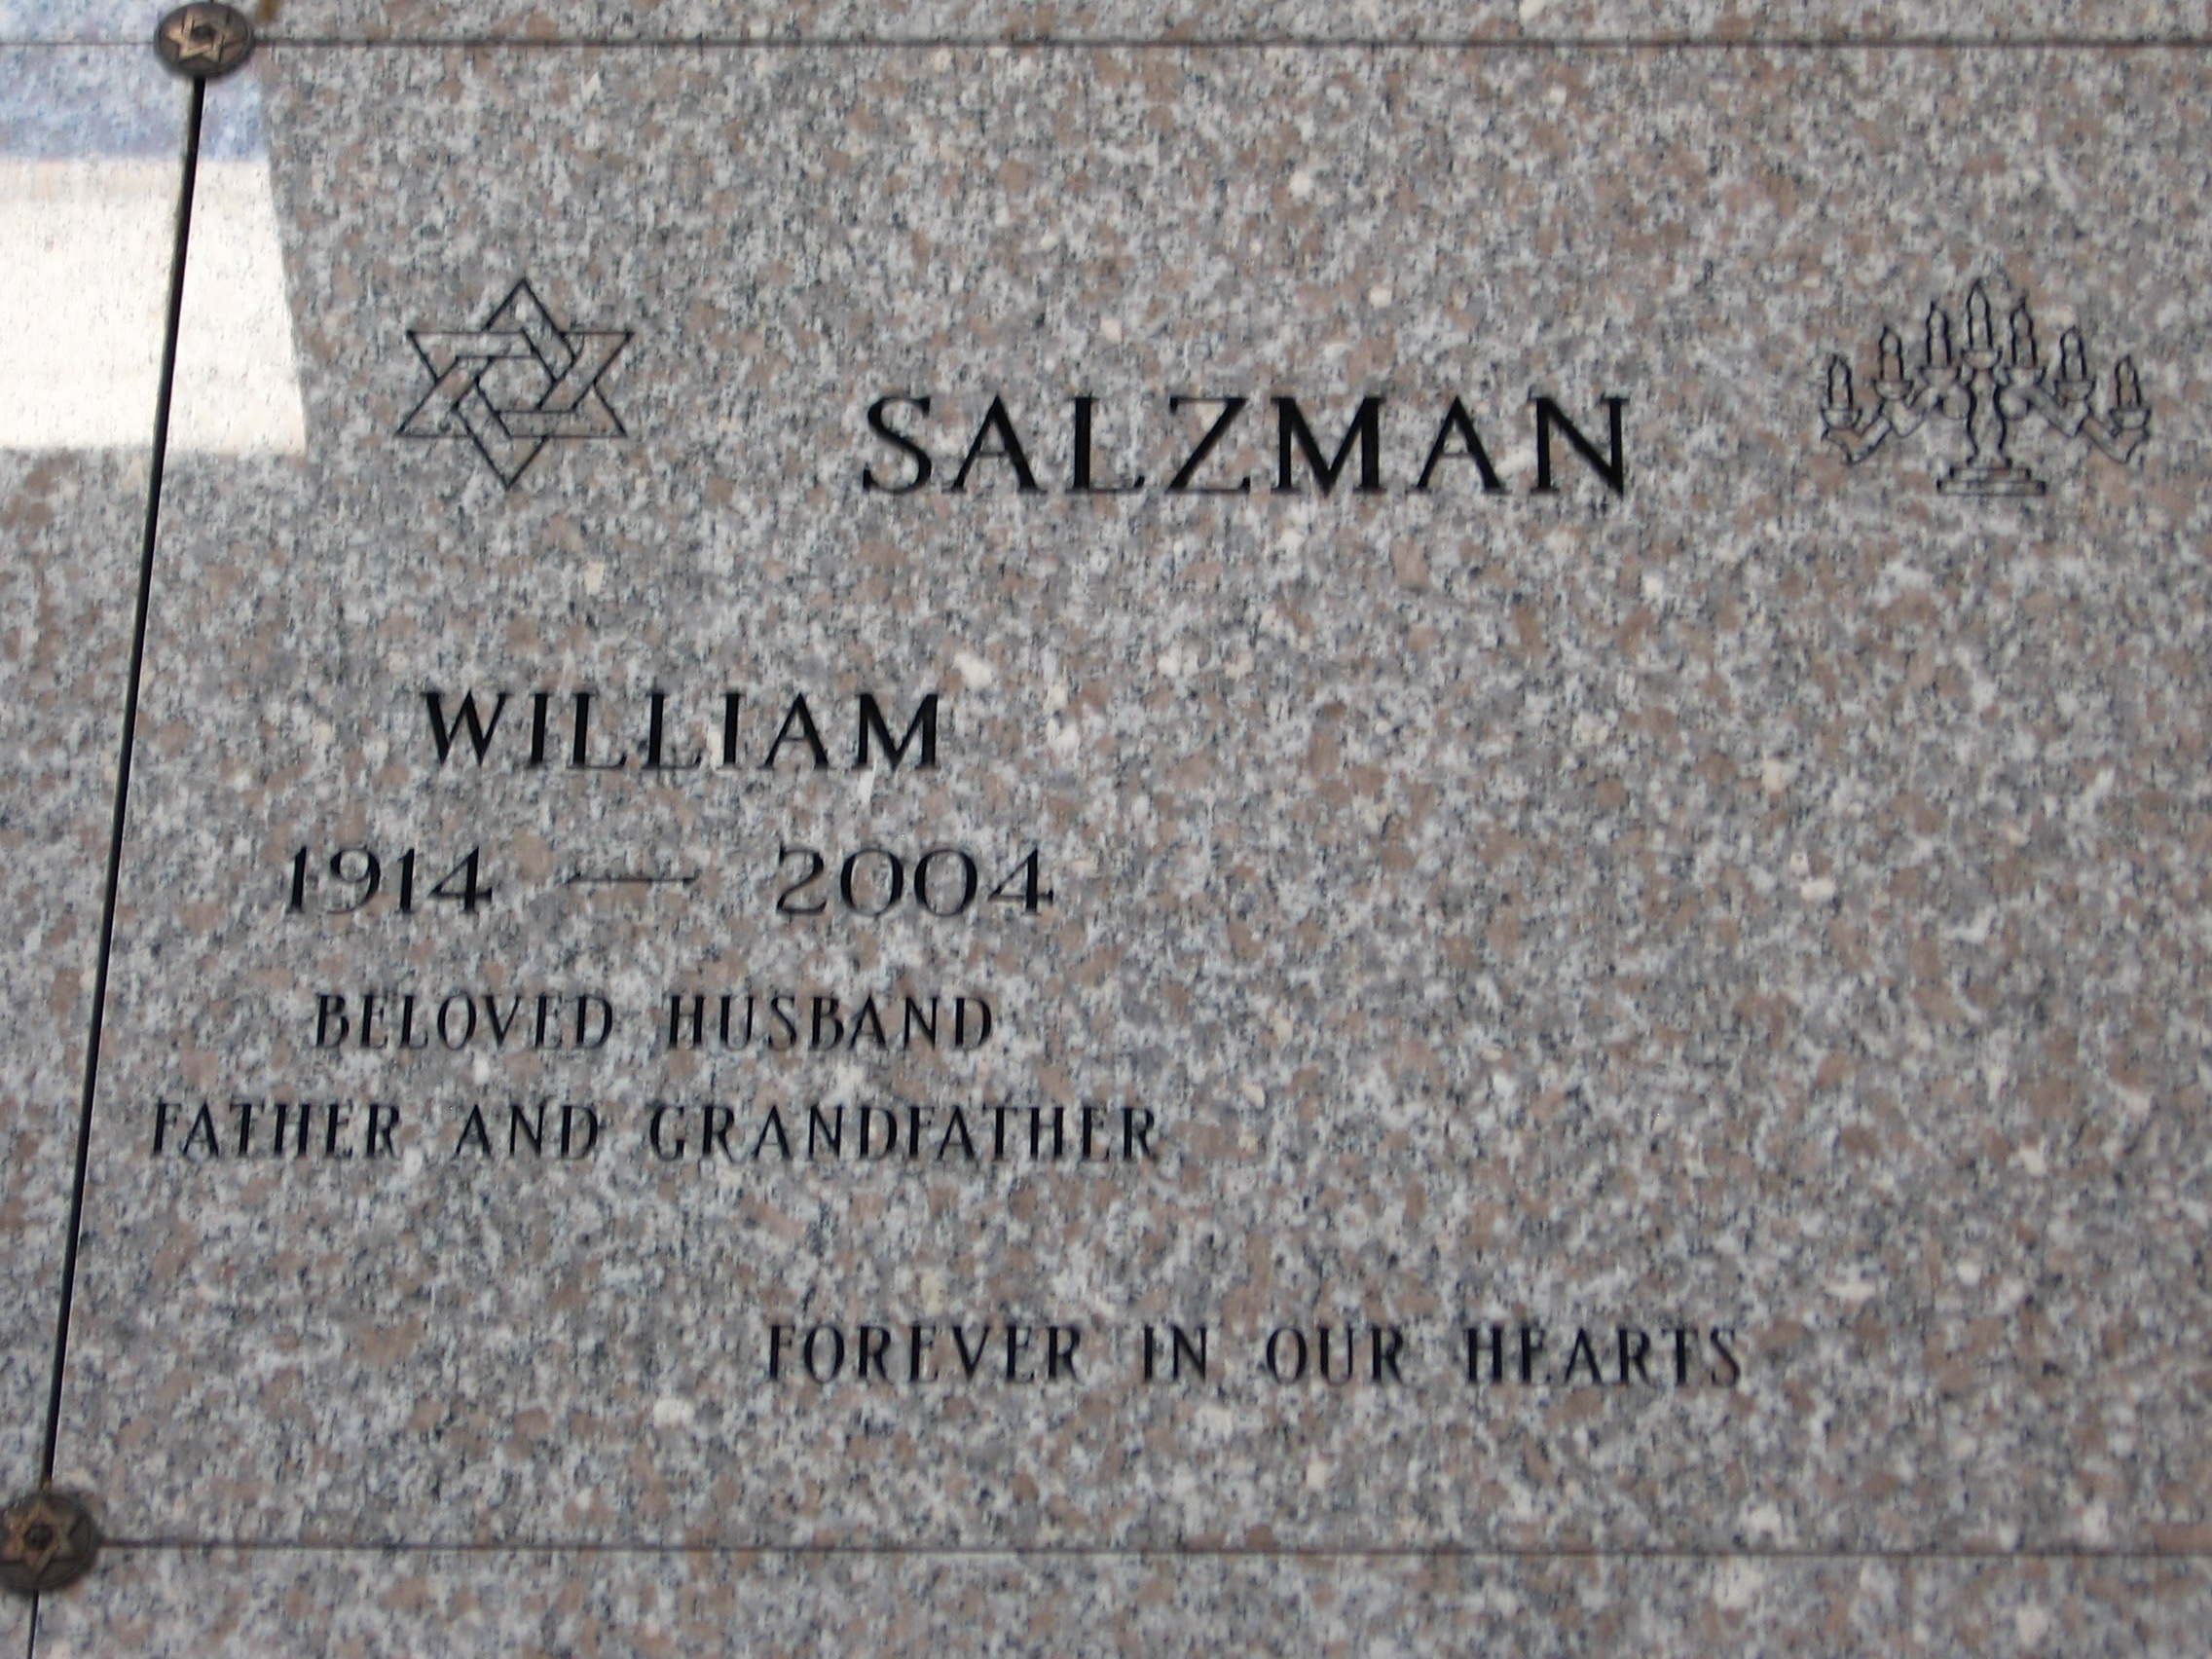 William Salzman